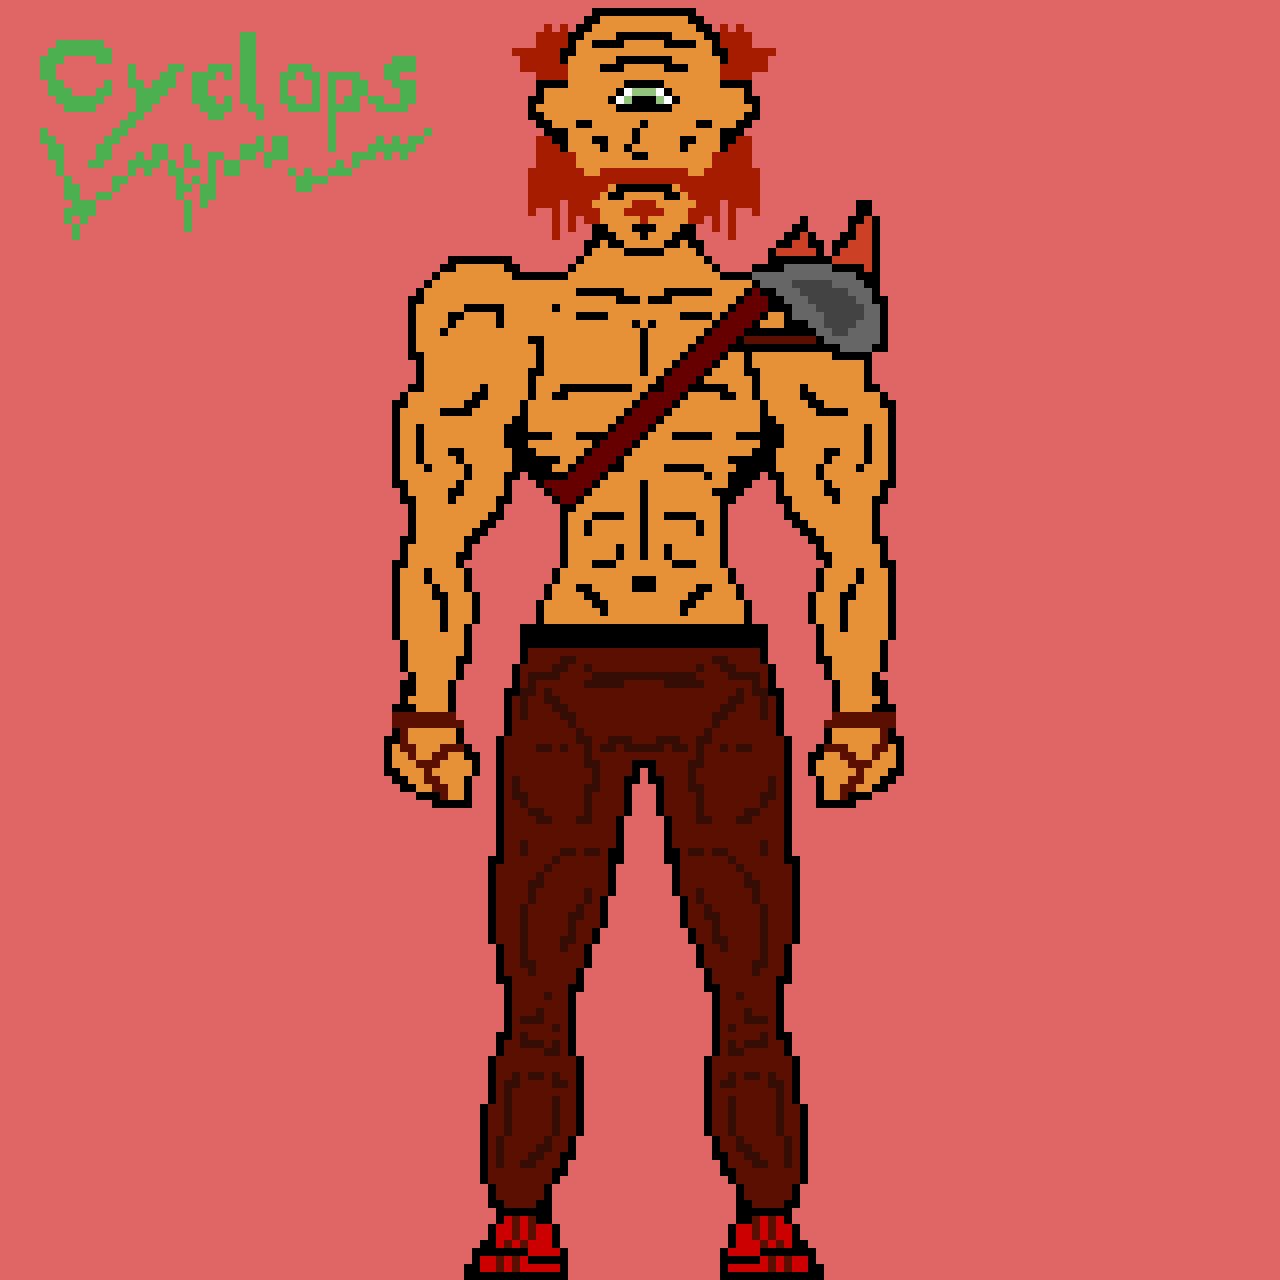 cyclops-contest